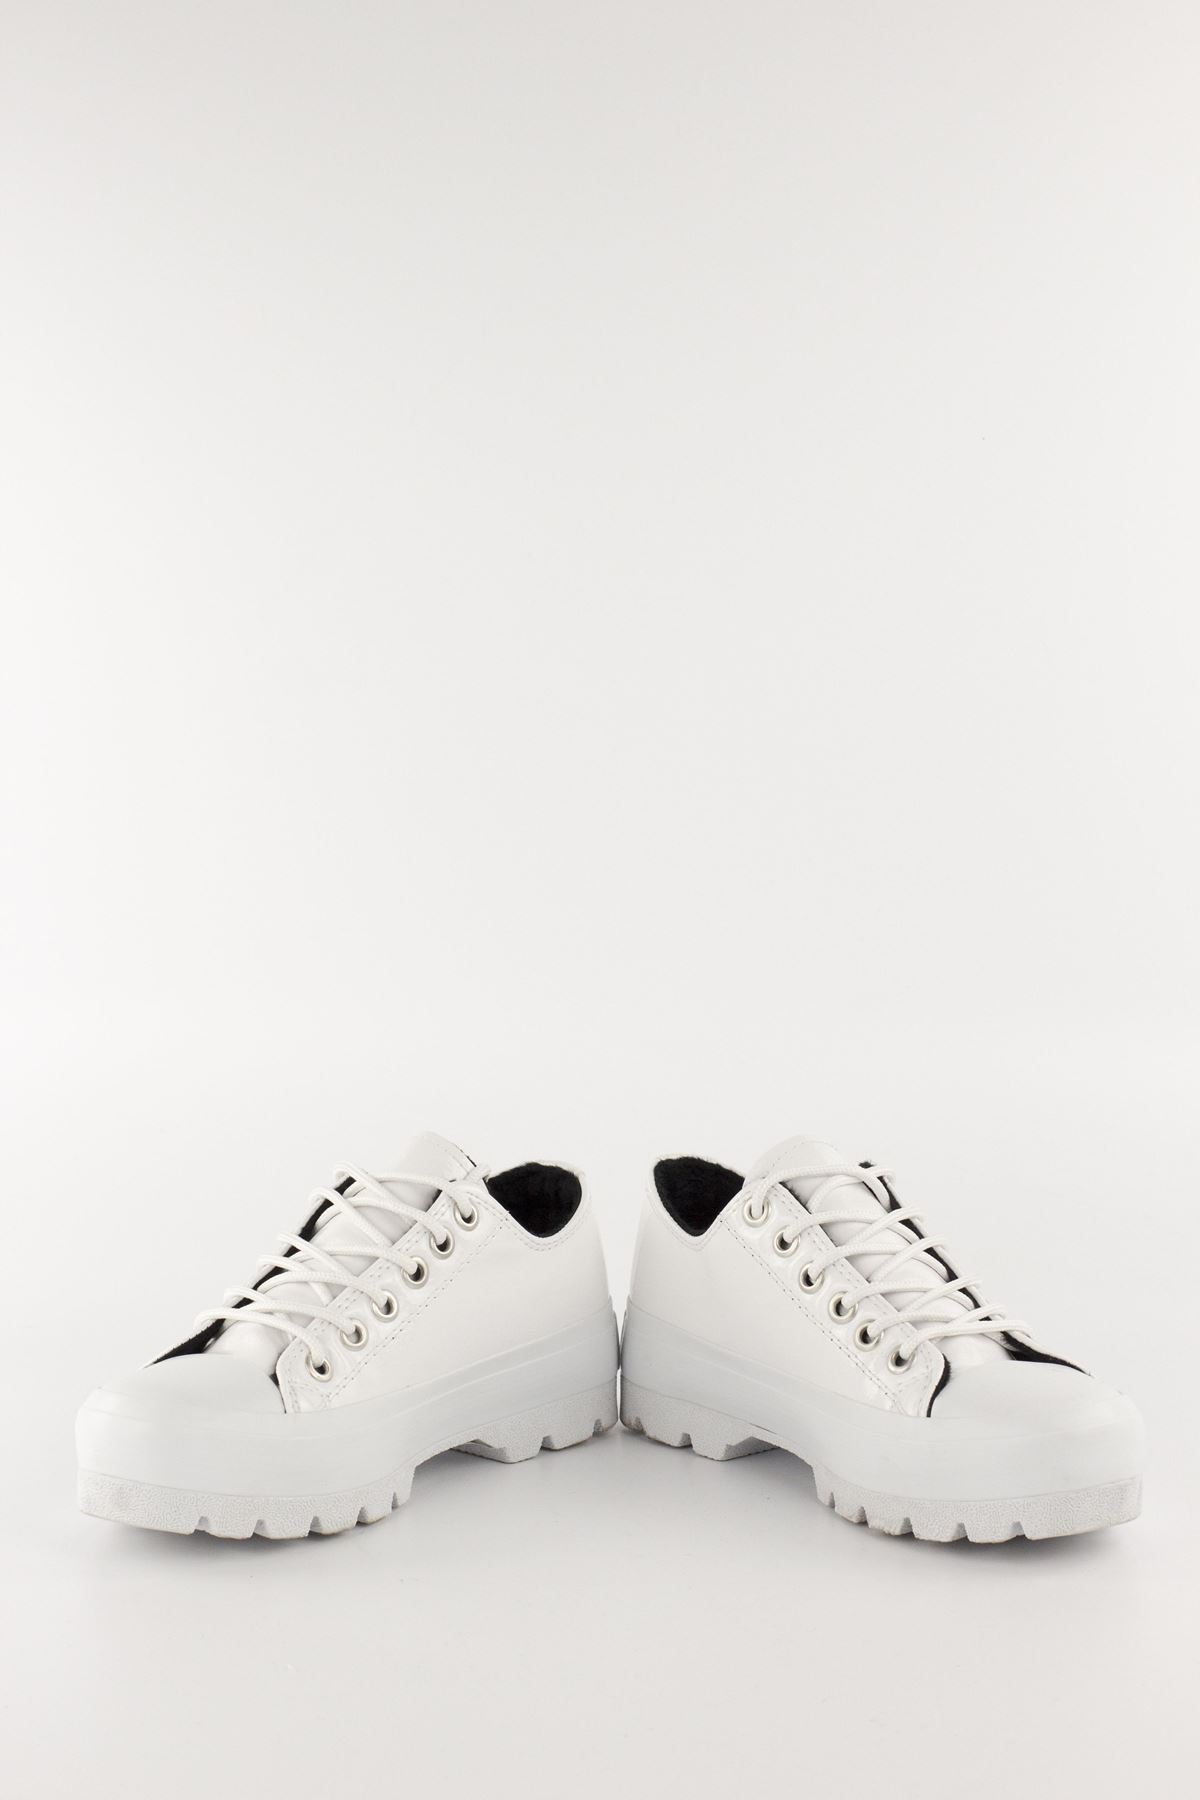 Mita Kadın Sneaker Beyaz Kırışık